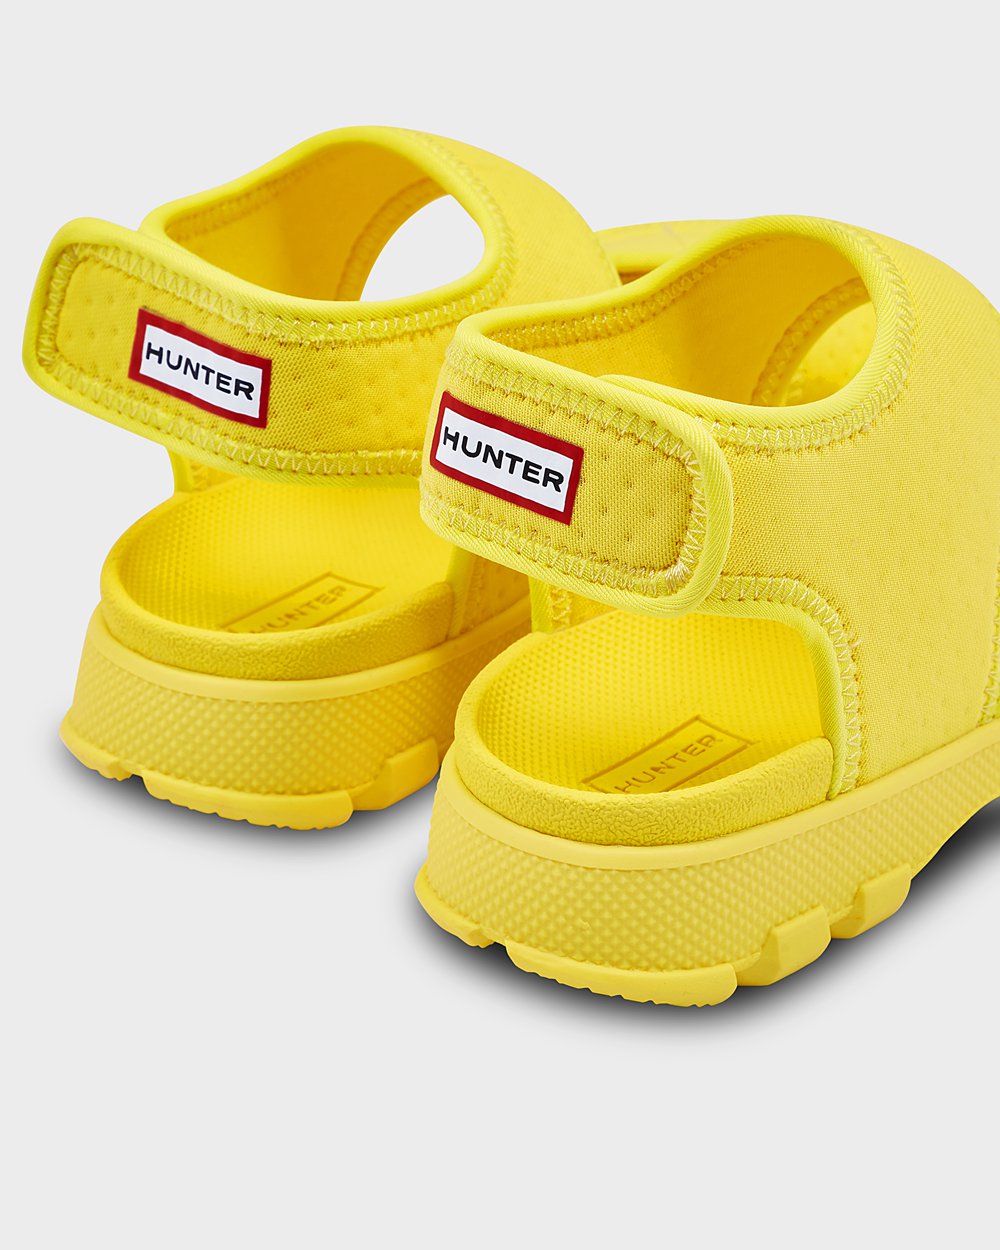 Kids Sandals - Hunter Original Big Outdoor Walking (41UANHTJP) - Yellow